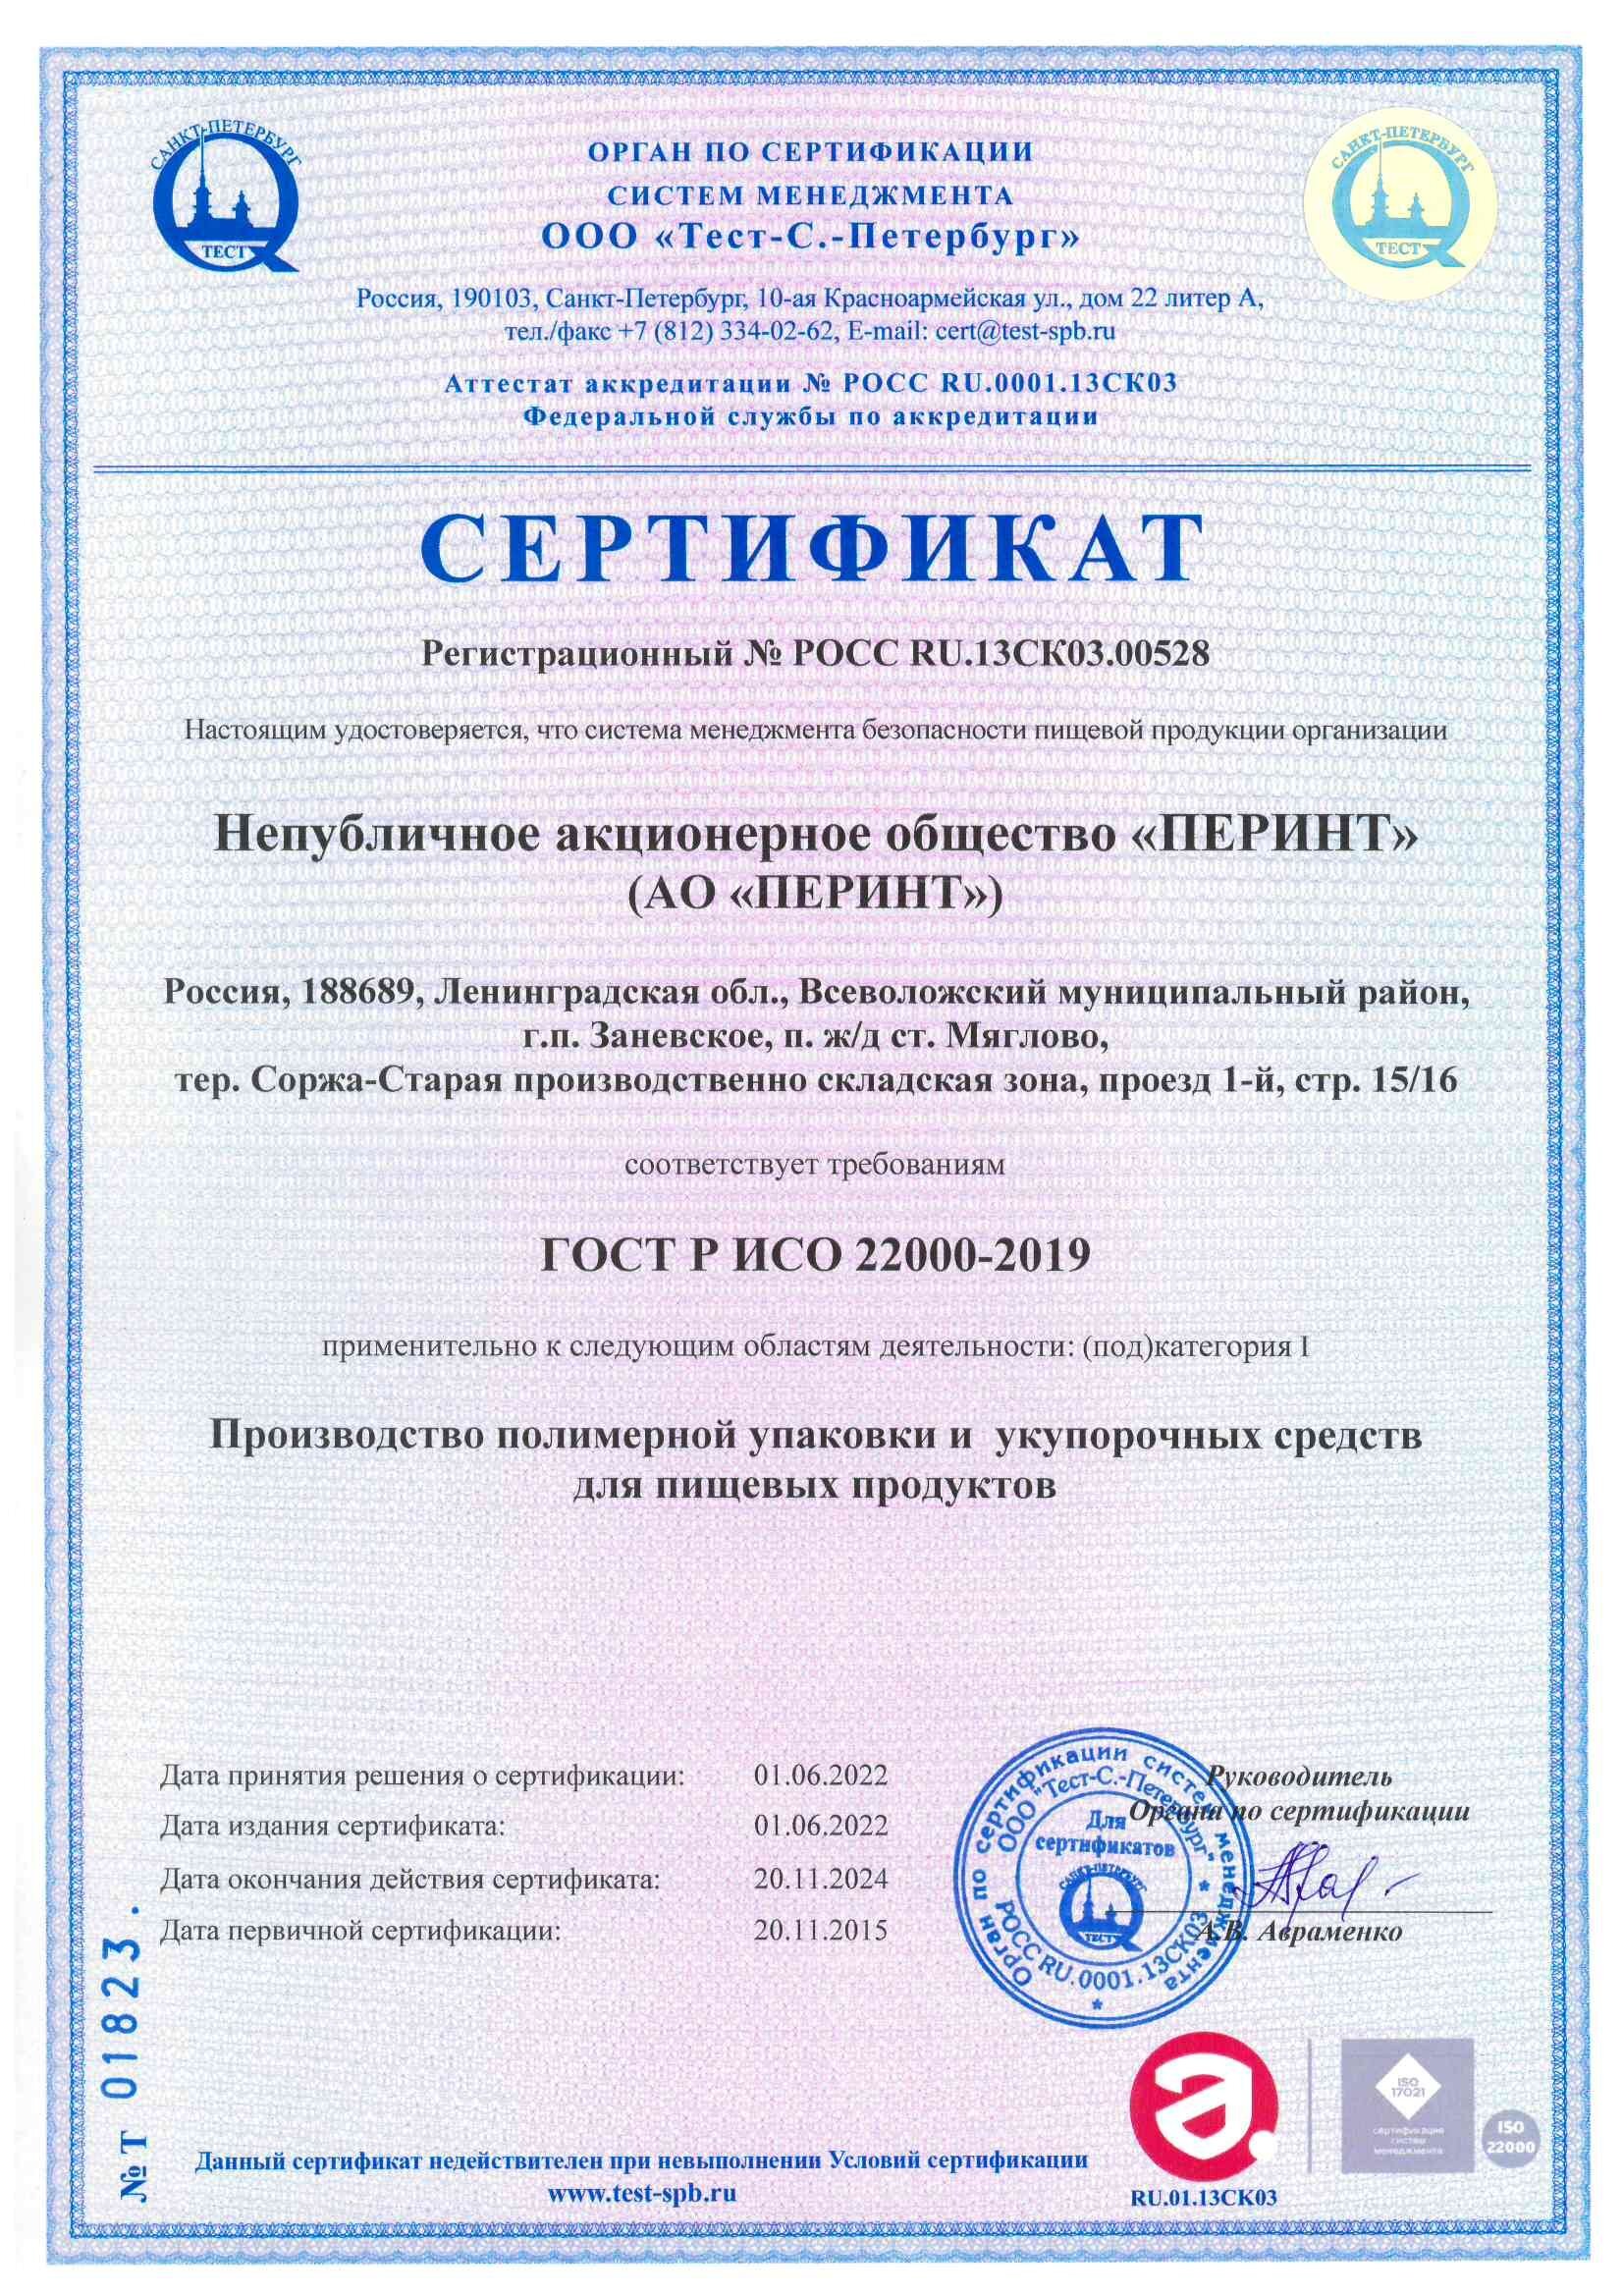 Сертификат соответствия СМ БПП требованиям ГОСТ Р ИСО 22000-2019_2022